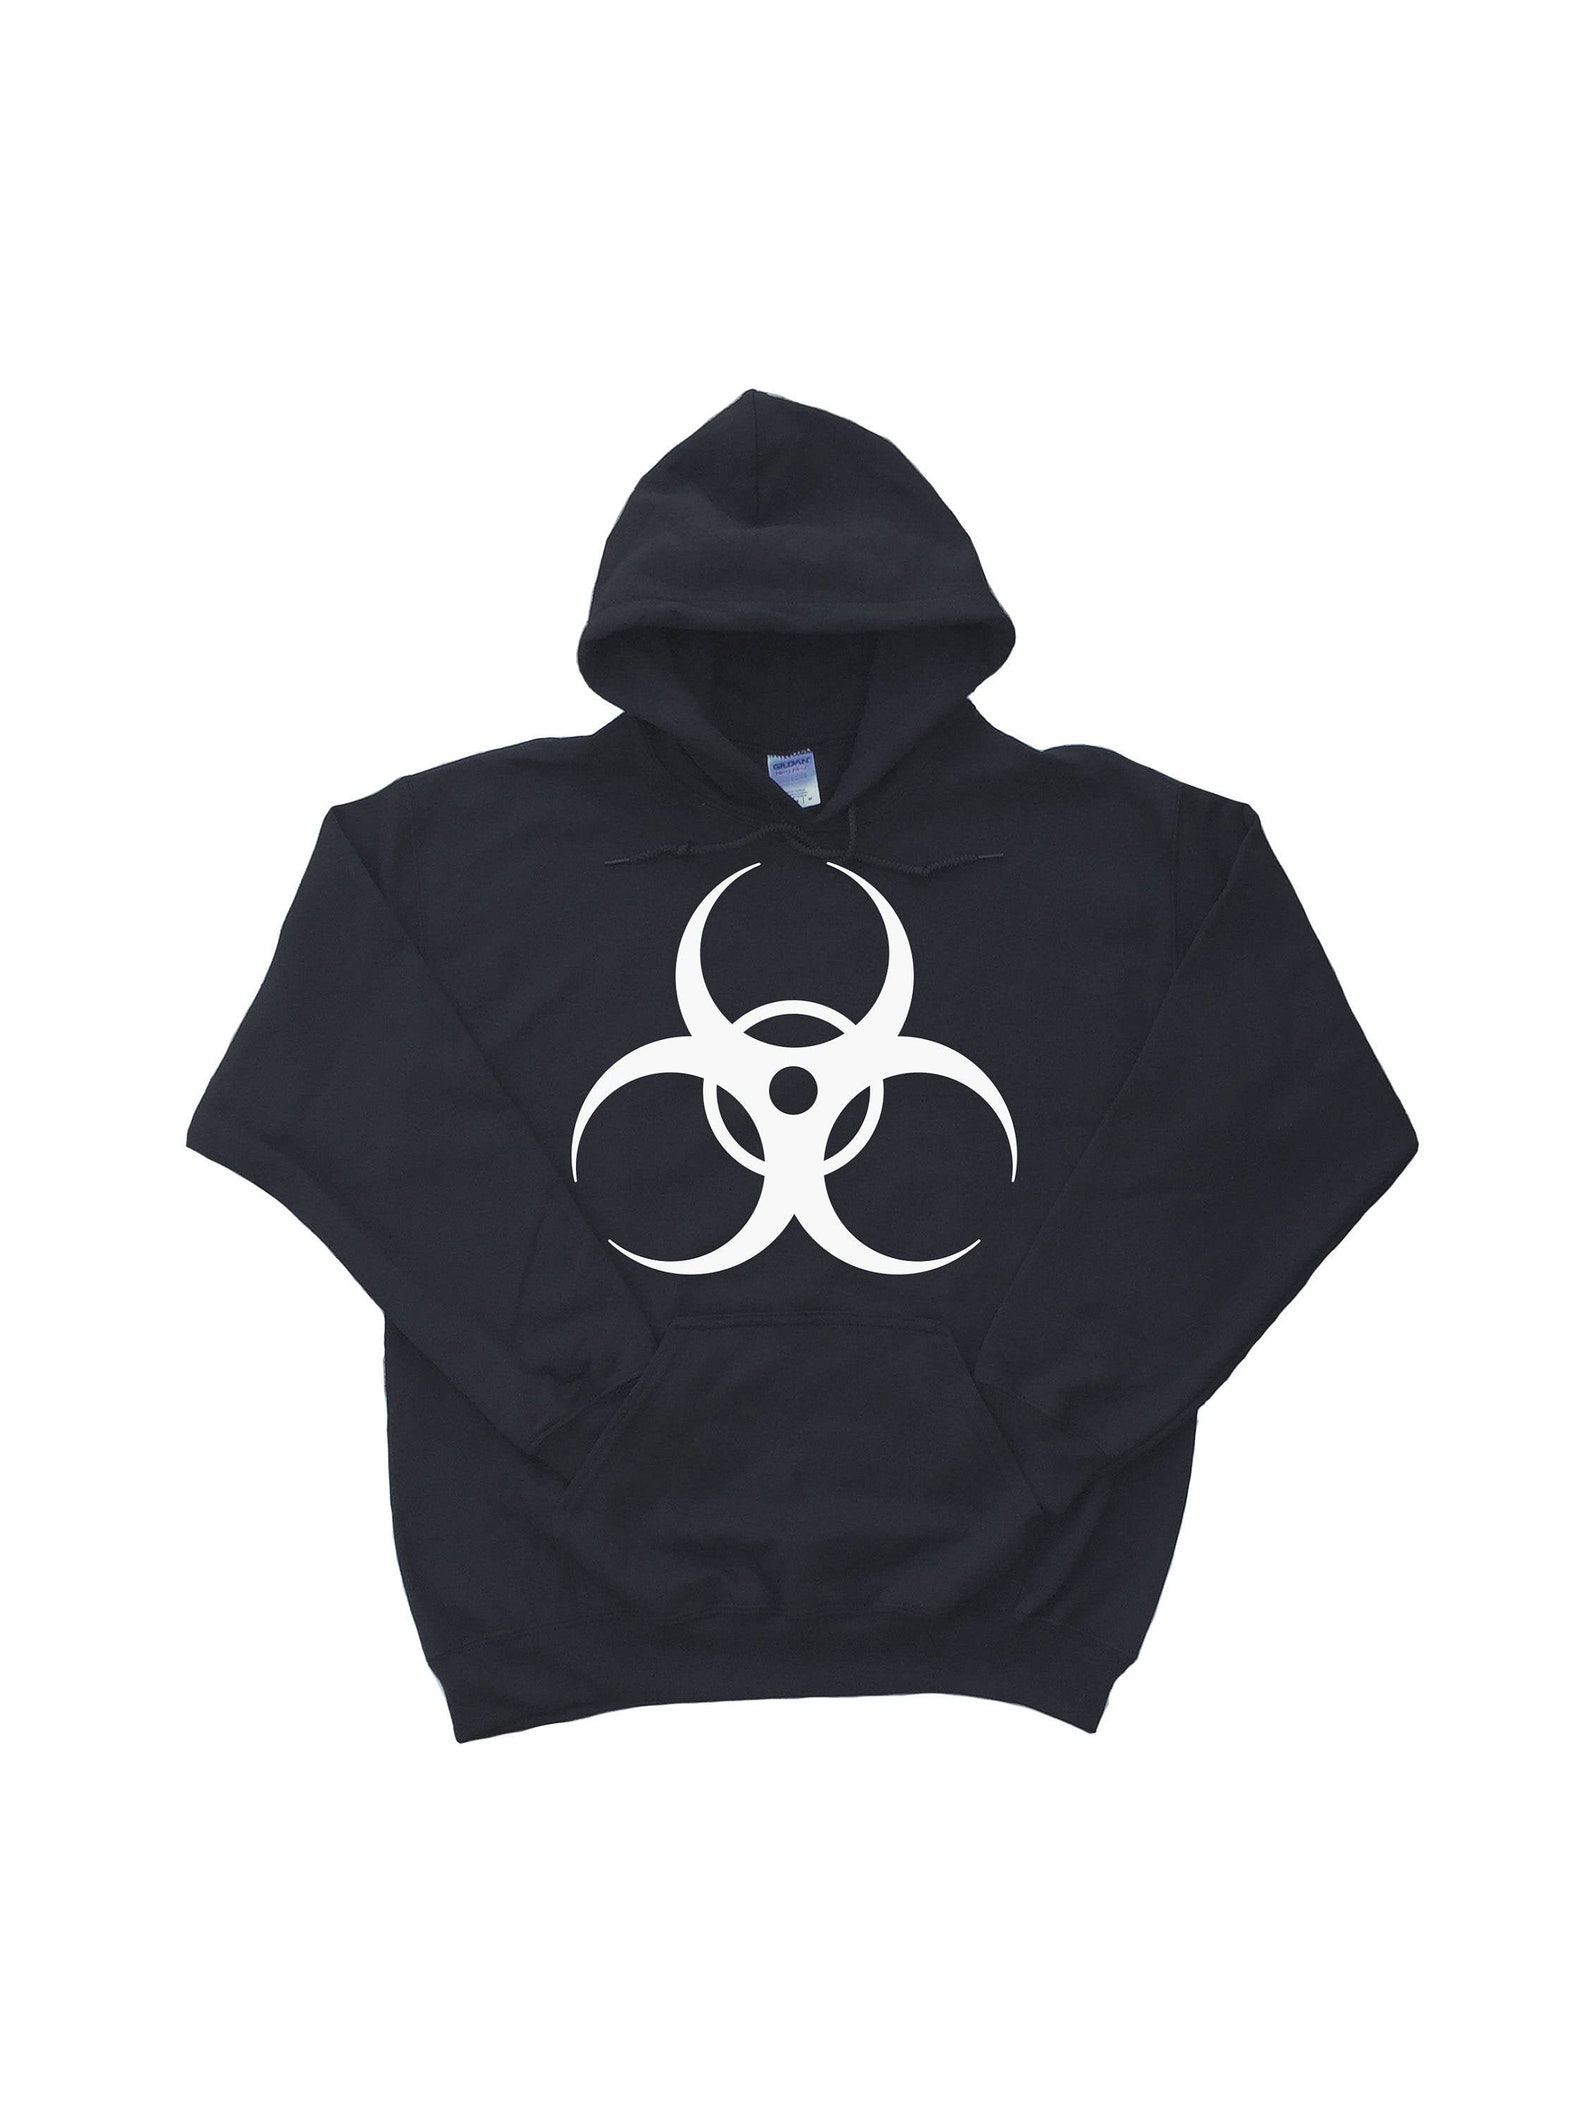 Biohazard Hoodie Zombie Sweatshirt Biological Research | Etsy